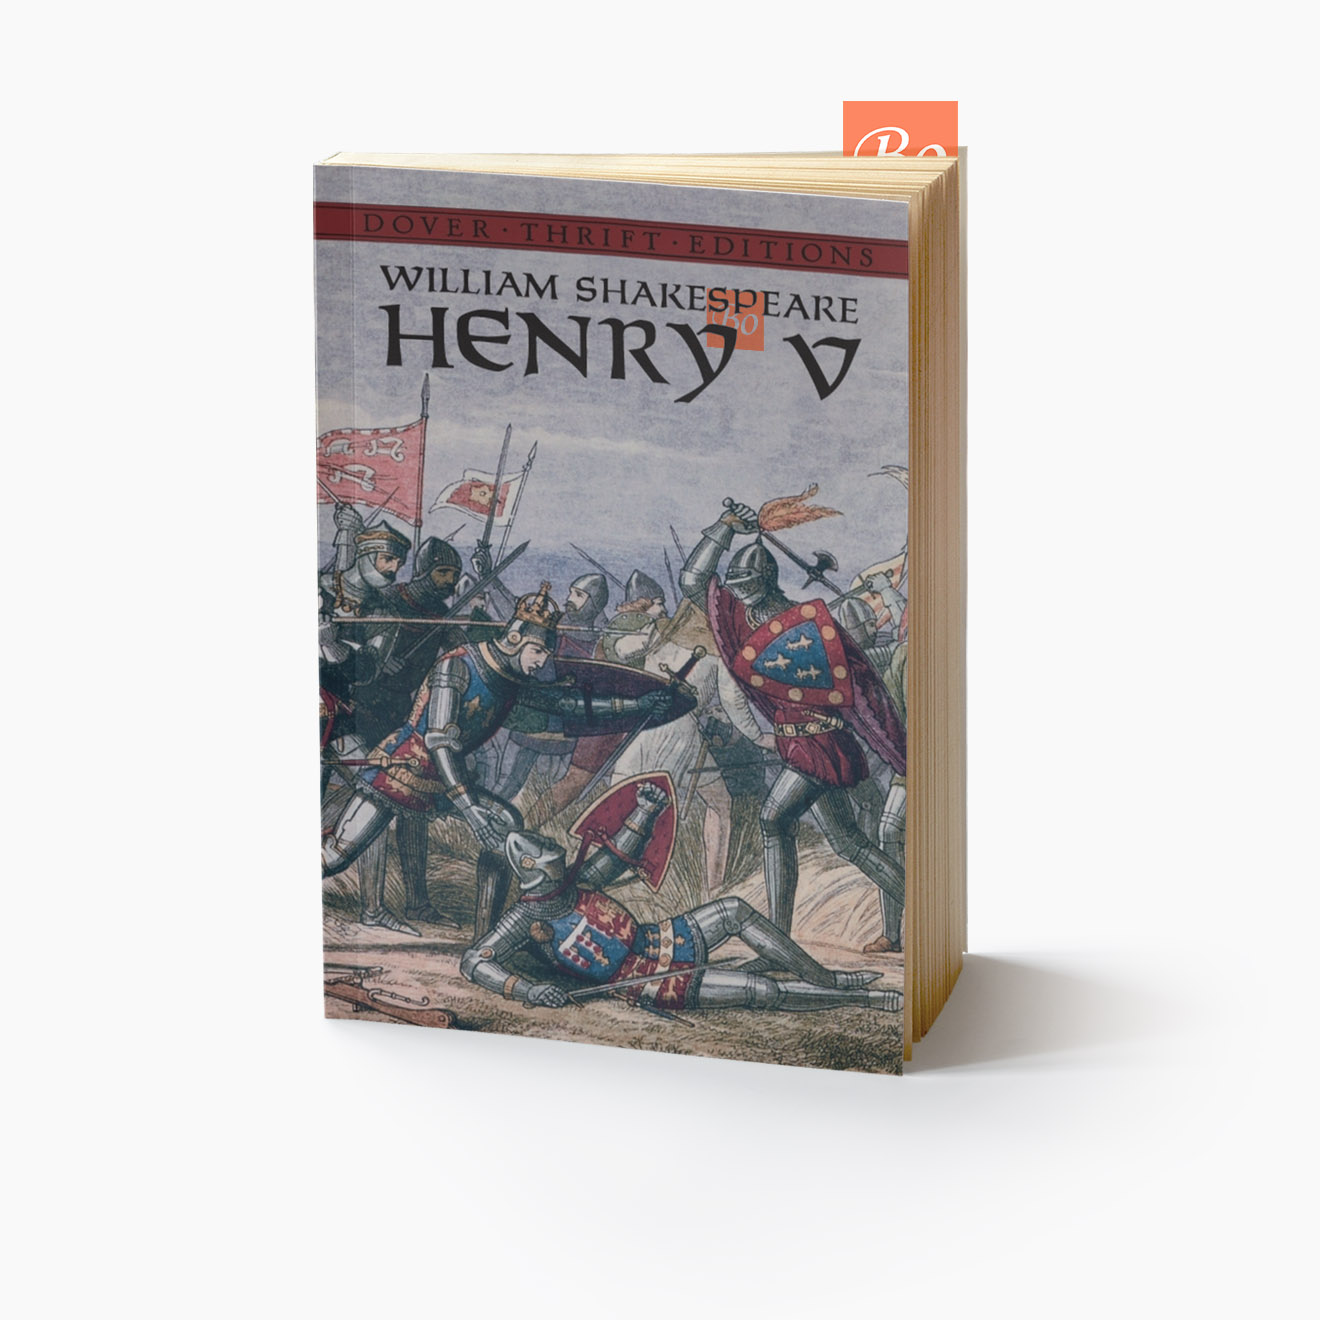 亨利五世 Henry V